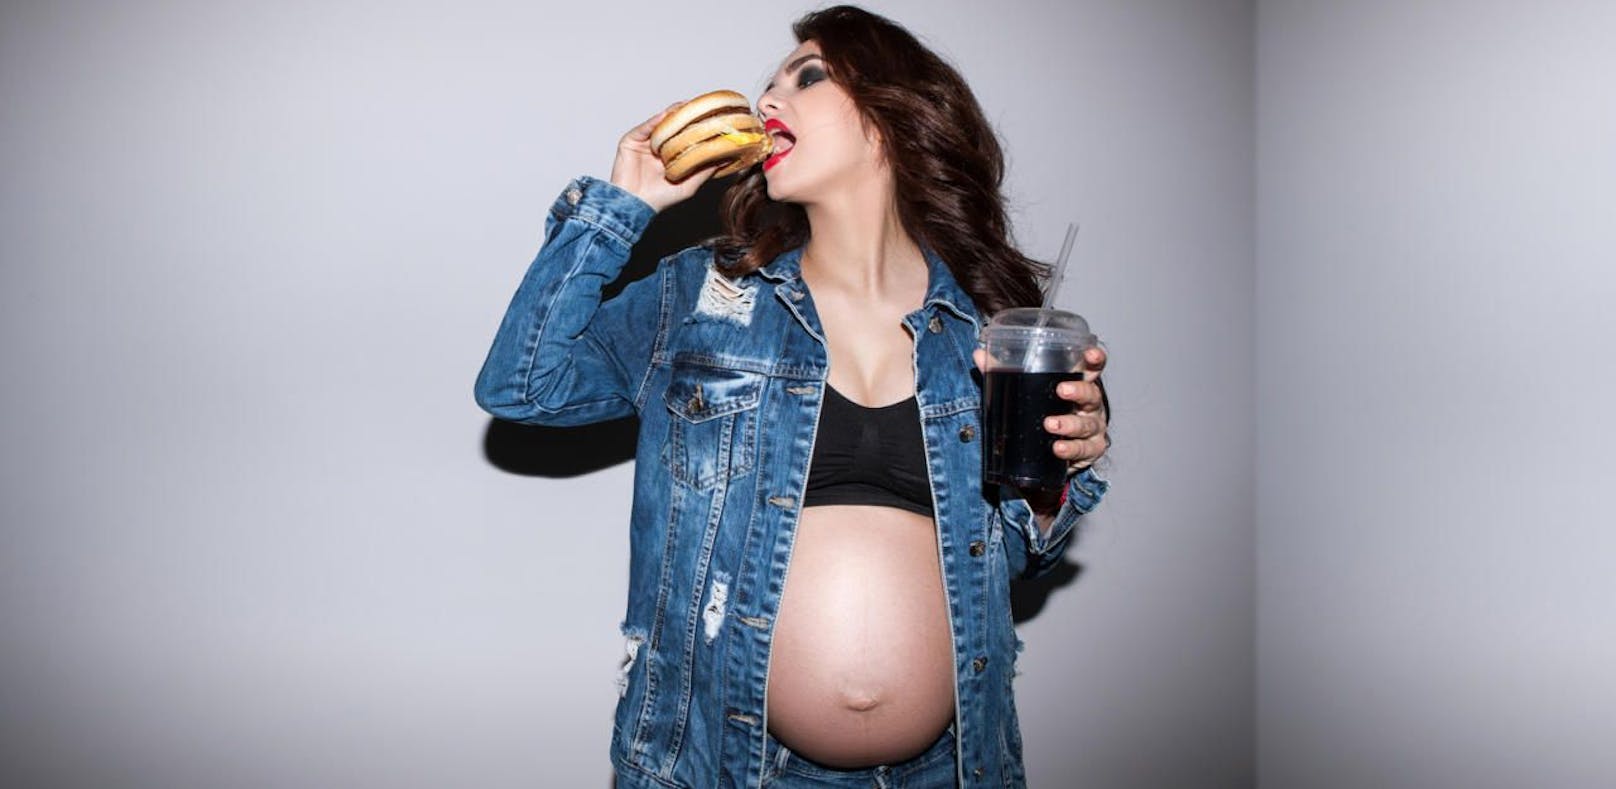 Wenn Sie zu viel Fast Food essen, kommt es vielleicht erst gar nicht dazu: Schwanger werden wird dann nämlich schwieriger.